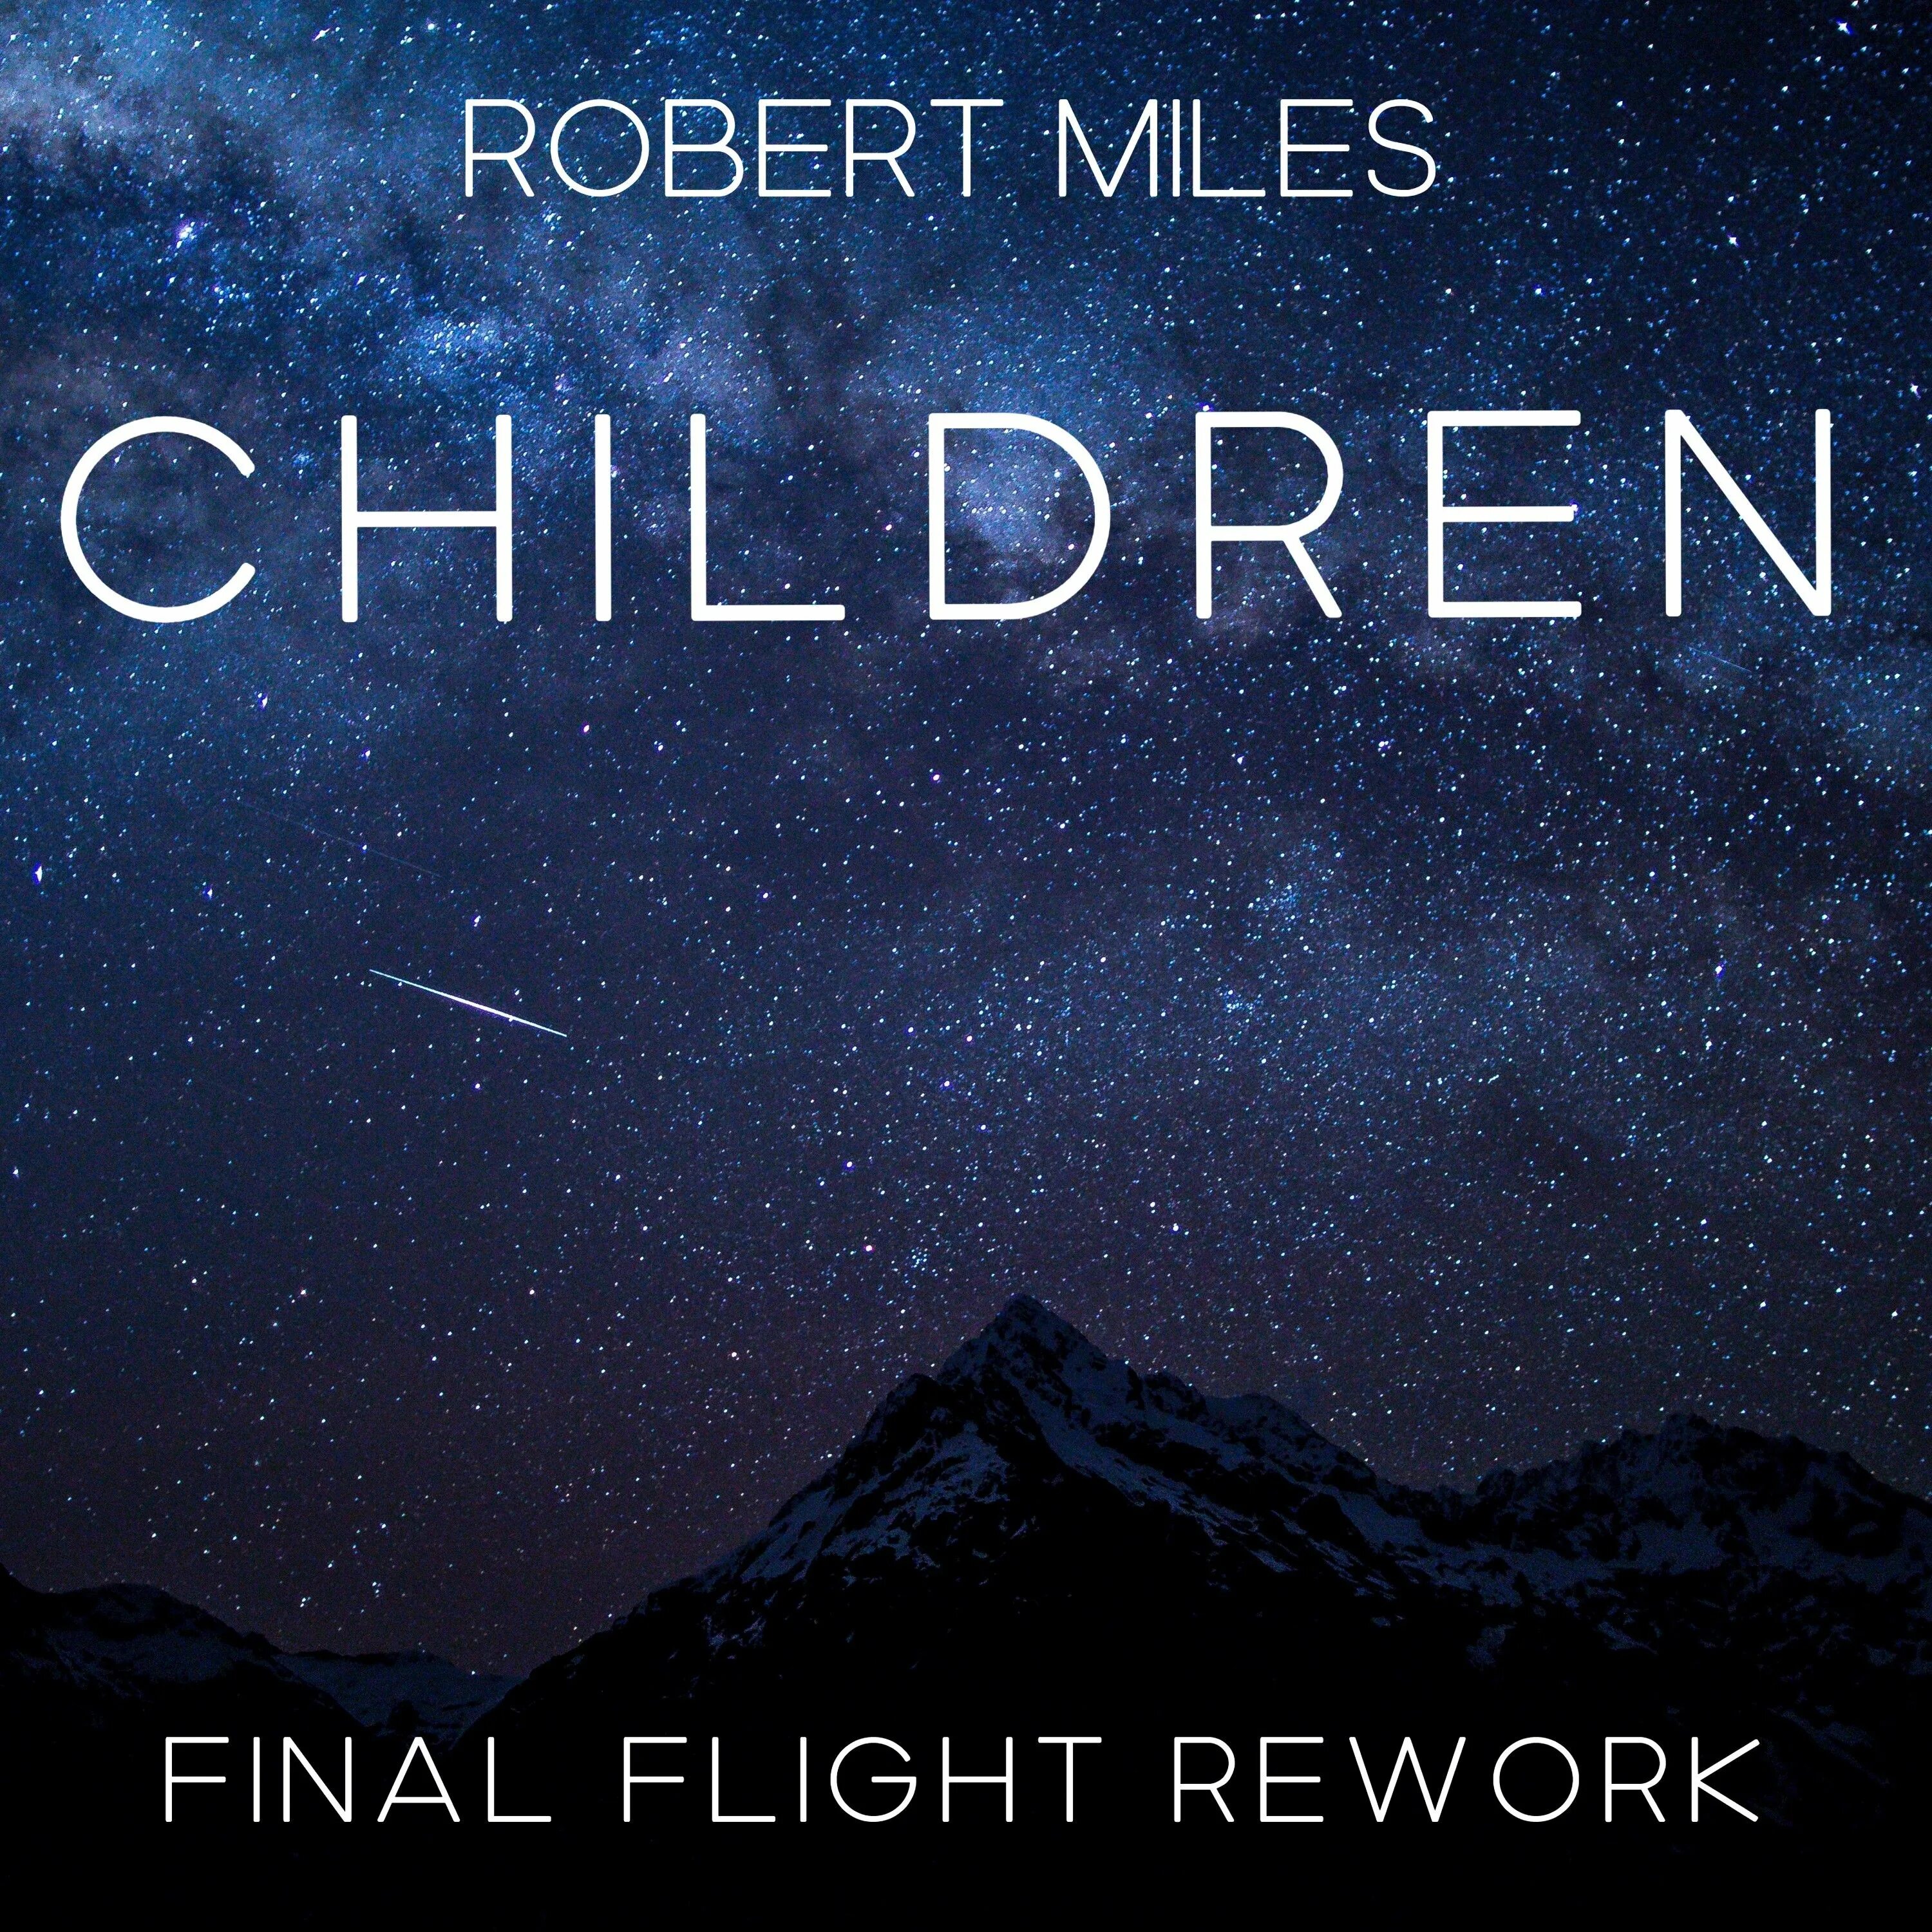 Robert miles mp3. Robert Miles. Robert Miles children. Robert Miles children обложка.